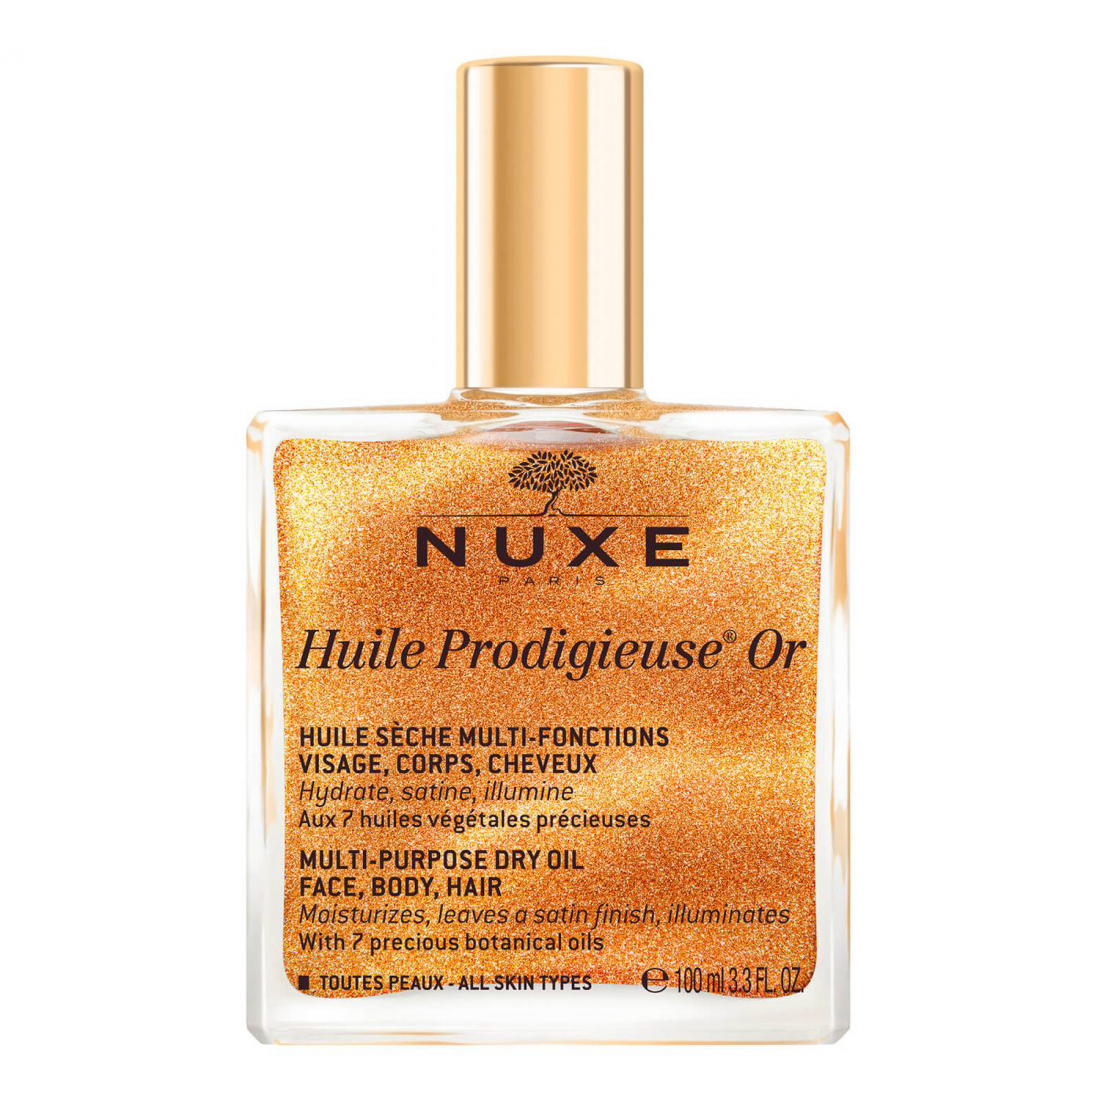 'Huile Prodigieuse® Or' Gesichts-, Körper- und Haaröl - 100 ml